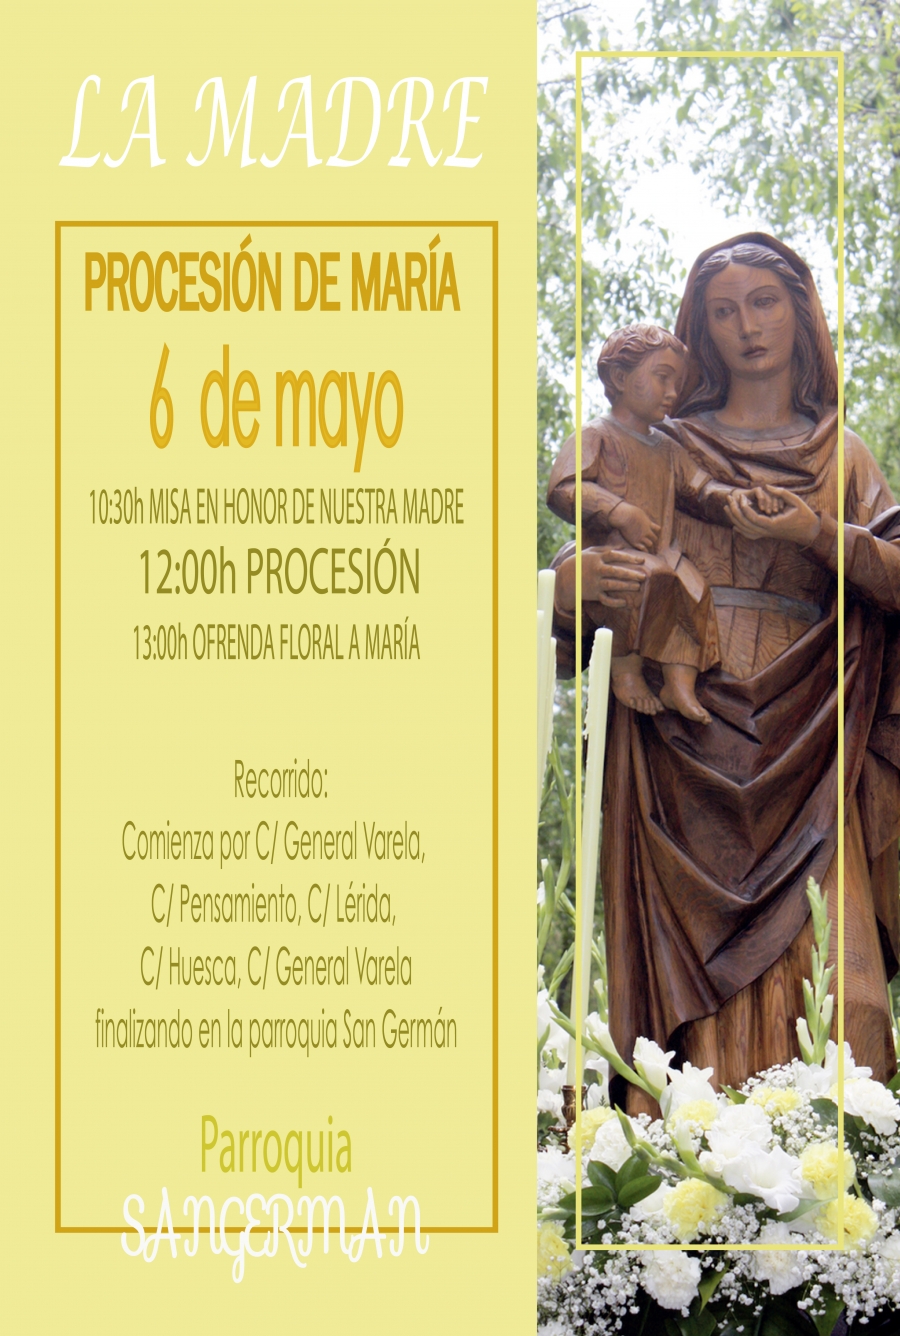 San Germán celebra sus fiestas patronales con una procesión de María